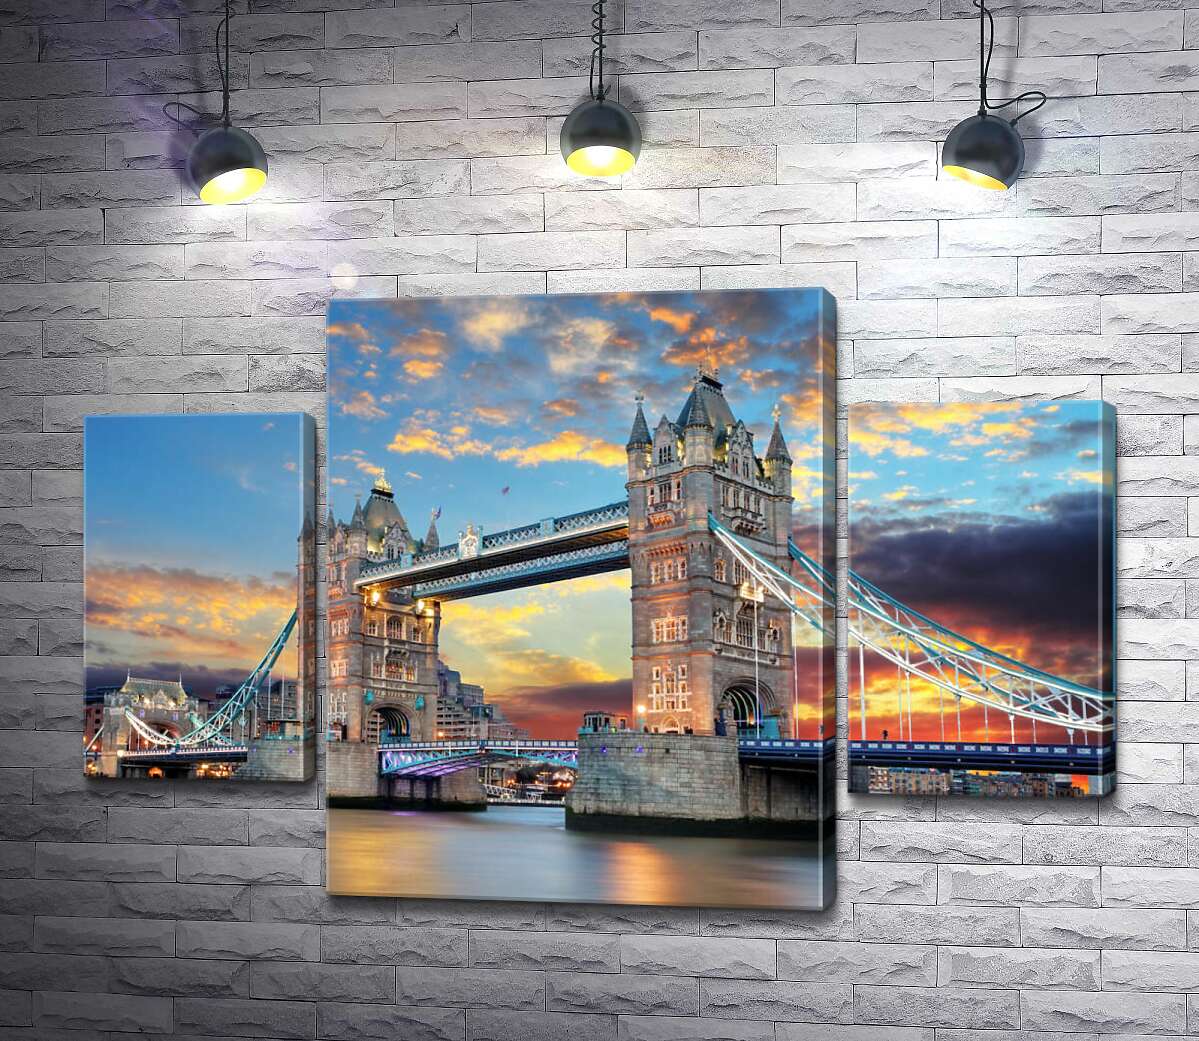 

Модульная картина ArtPoster Готические башни Тауэрского моста (Tower Bridge) 131x89 см Модуль №7